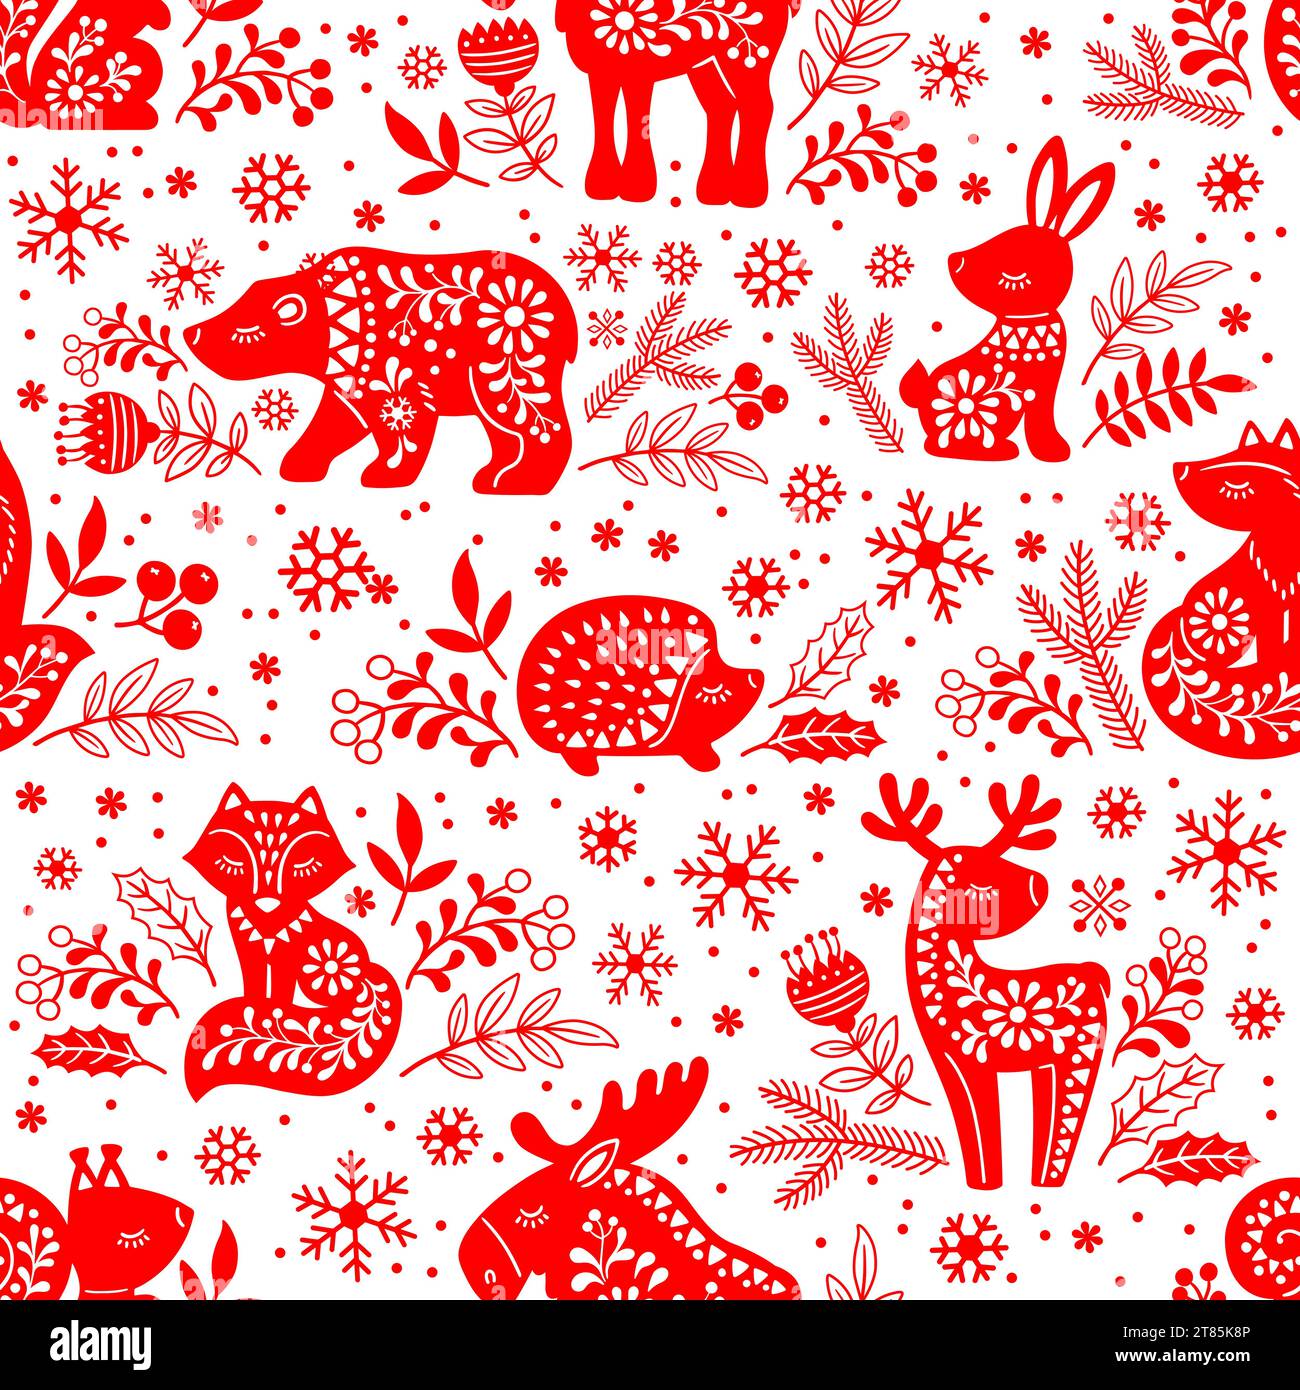 Nahtloses Vektormuster. Verzierte rote Silhouetten von Waldtieren Hirsch, Bär, Elch, Fuchs, Hase, Eichhörnchen, Igel unter Blumen auf weißem Hintergrund Stock Vektor